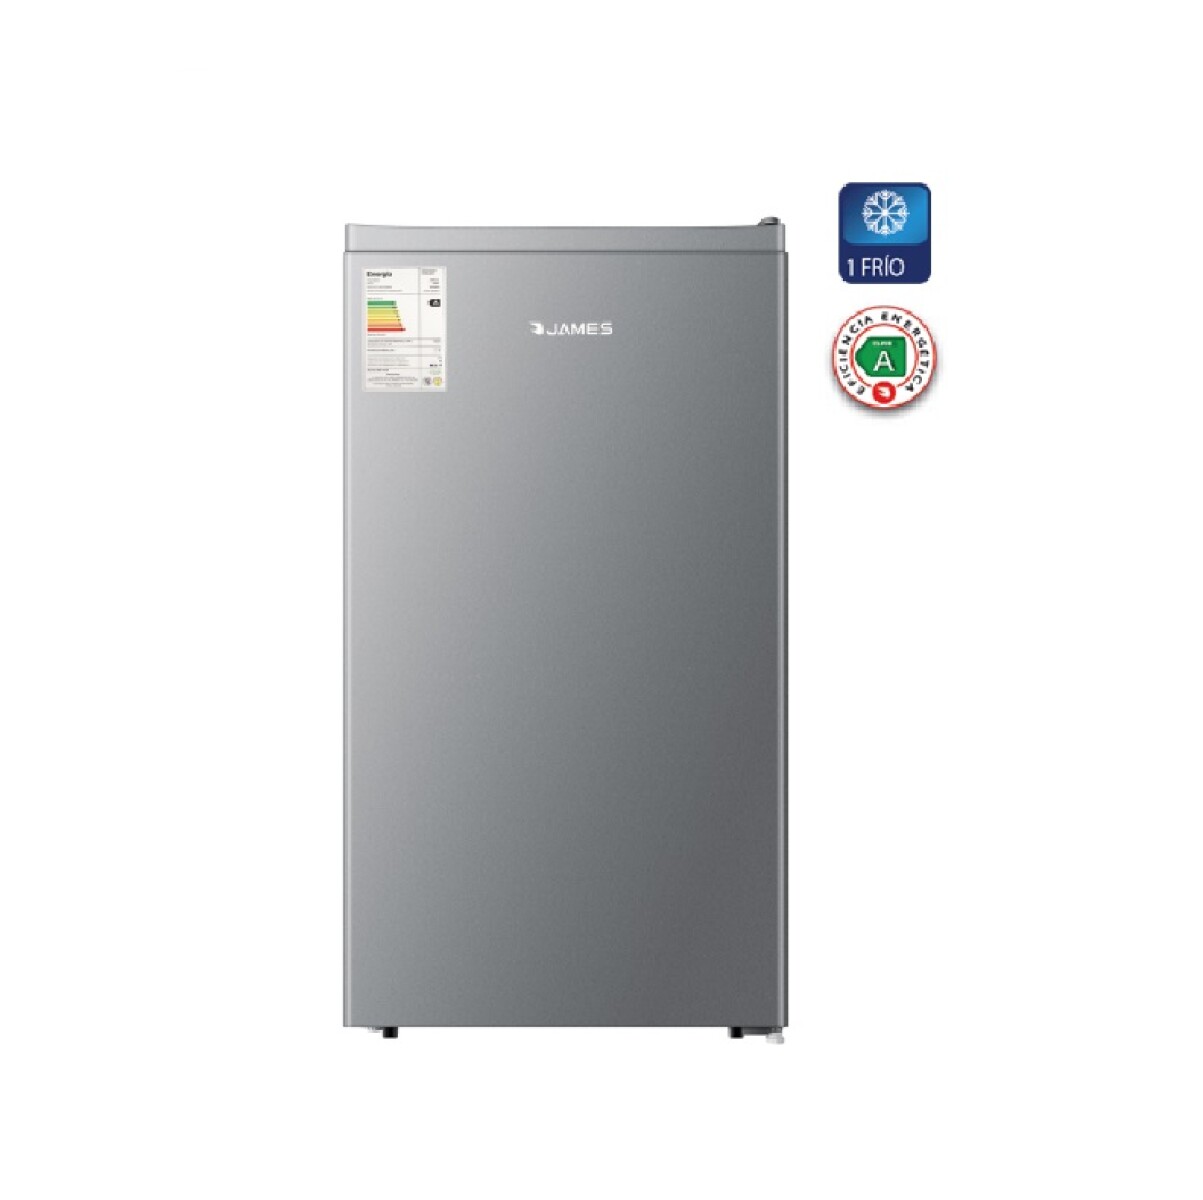 Refrigerador 1 Puerta James Frio Natural Acero Inox - 001 